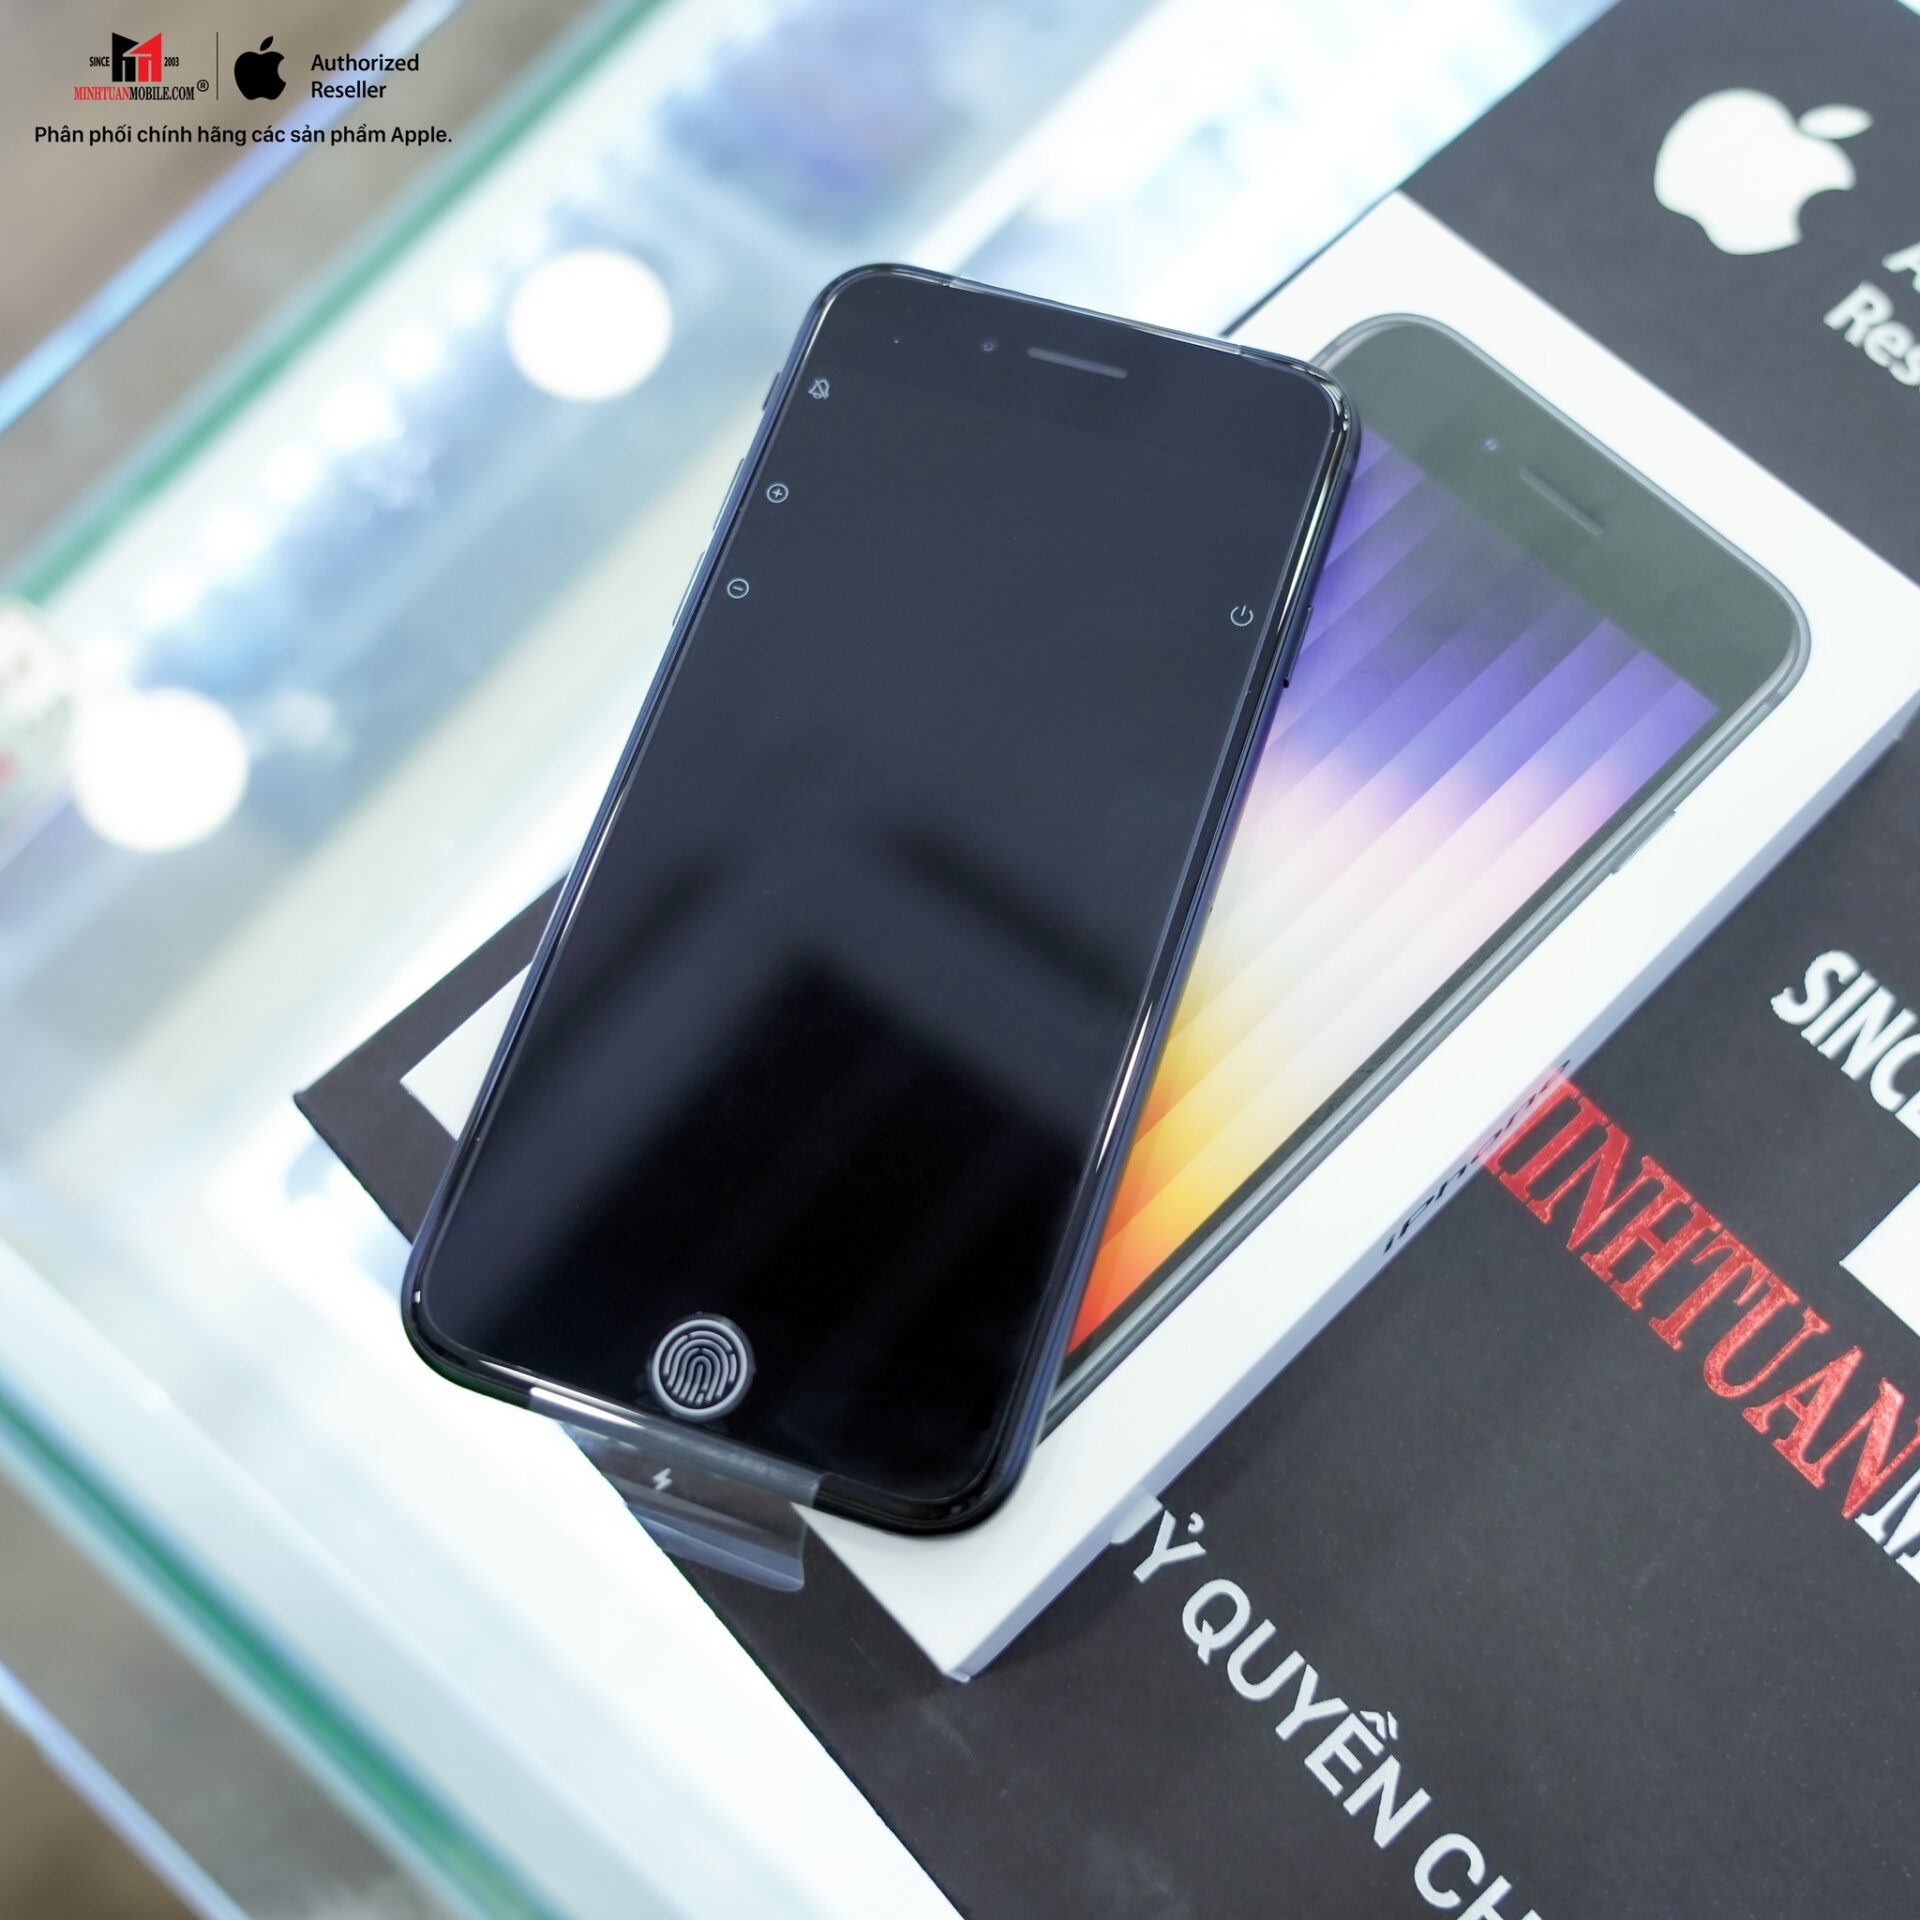 Minh Tuấn Mobile mở bán iPhone SE 2022 chính hãng, giá từ 11,99 triệu đồng